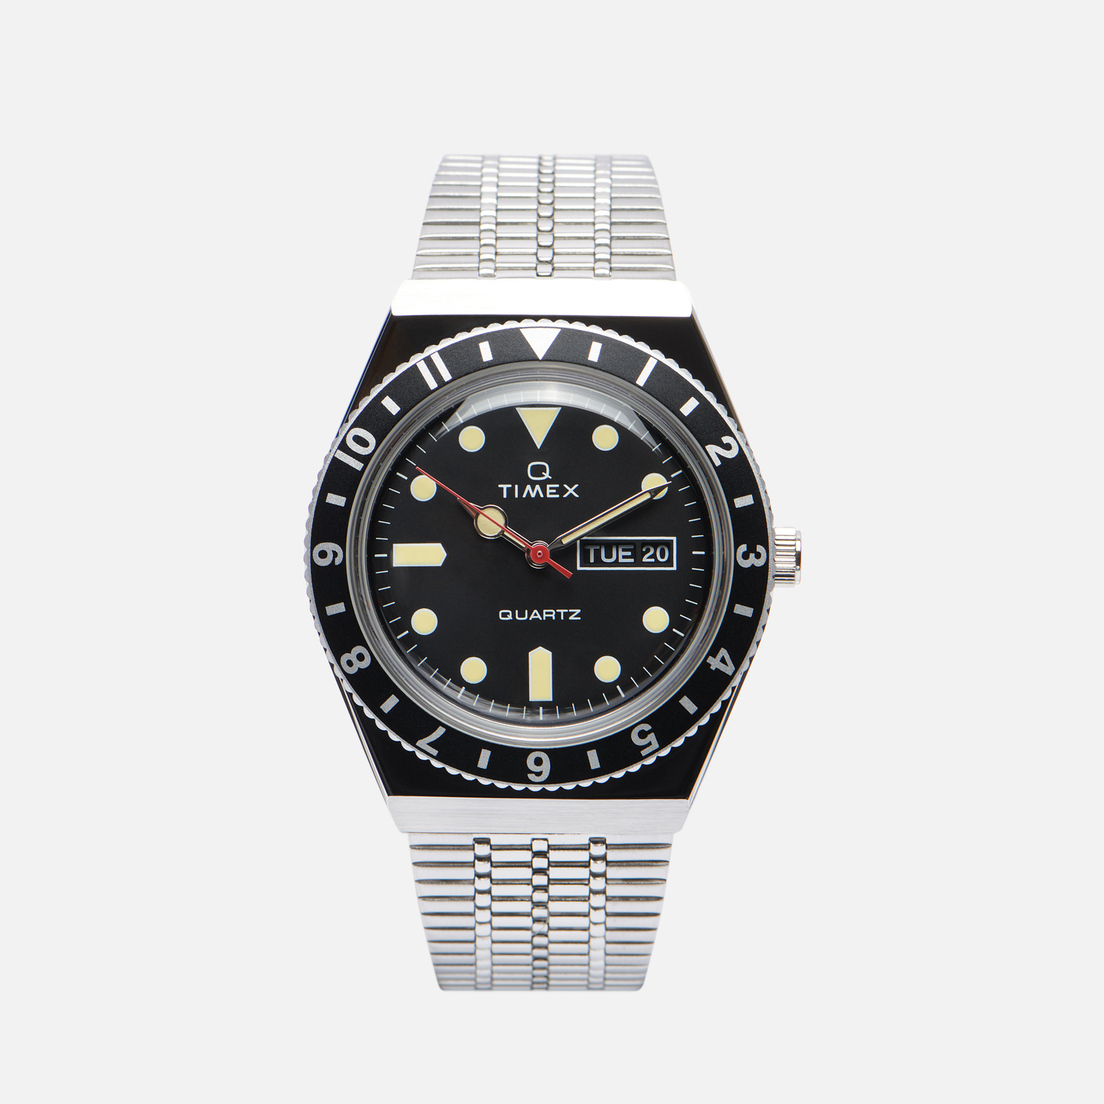 Timex Наручные часы Q Diver